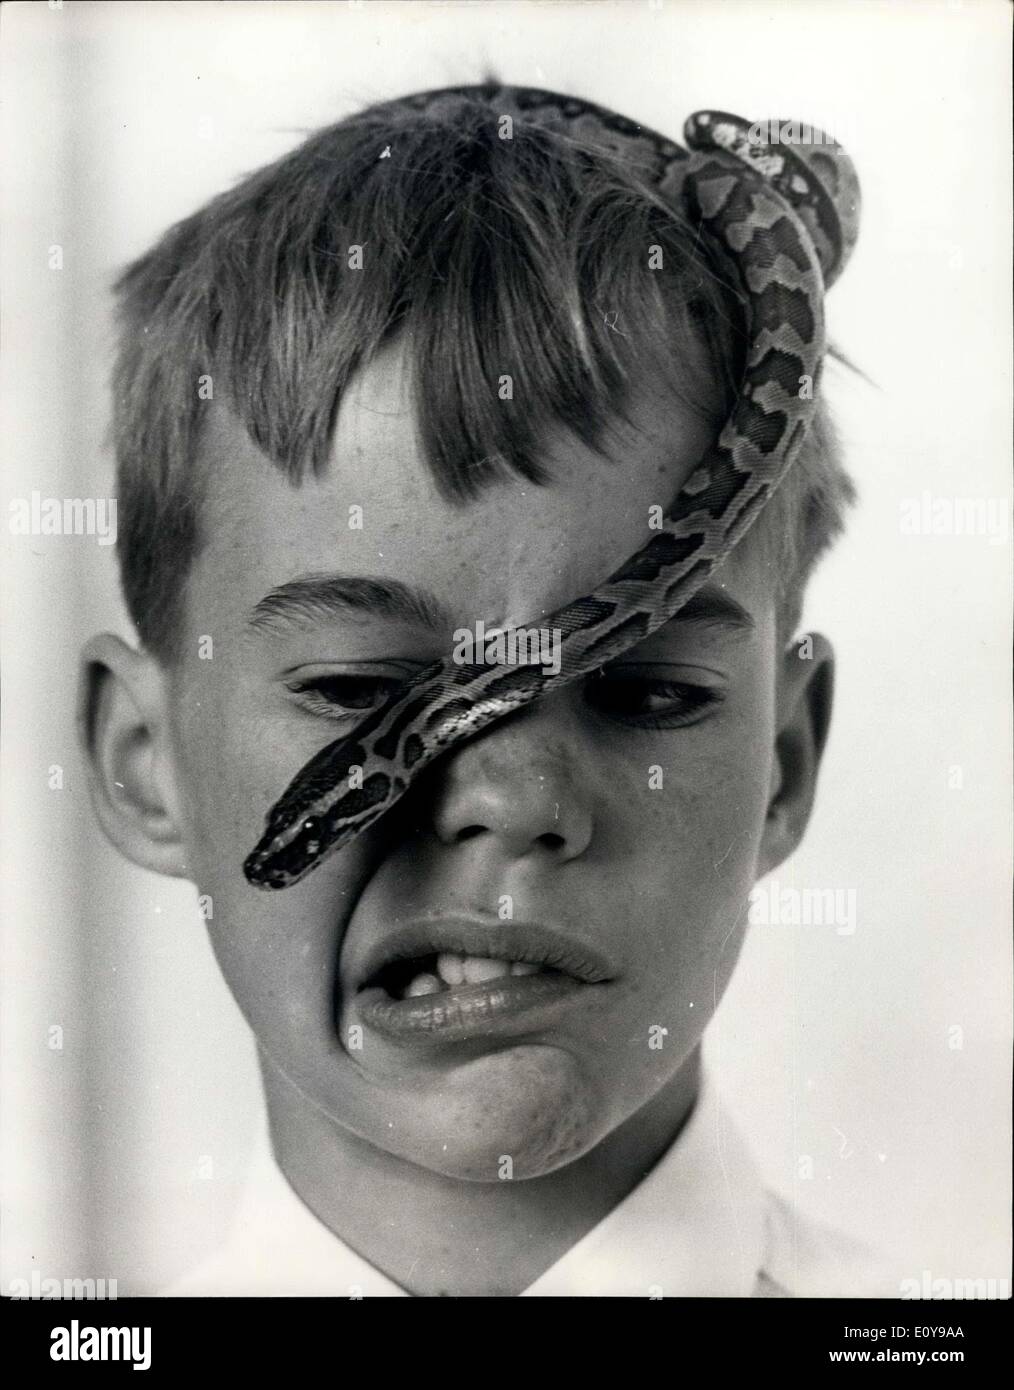 28 août 1969 - à venir face à face avec un python. Les enfants sont allés à l'hôtel Savoy - hier, beaucoup d'entre eux avec leur animal de serpents - pour une réception pour le lancement d'un nouveau livre qui sera publié demain par l'Hamlyn des groupes, dont l'objectif est d'encourager les enfants à propre non-serpents venimeux et ainsi devenir les herpétologistes. Photo montre 10 ans Stephen opham, du petit champ, Surrey, - utilise ses yeux aussi loin que possible, alors qu'il regardait son African rock python glisser sur sa tête. Banque D'Images